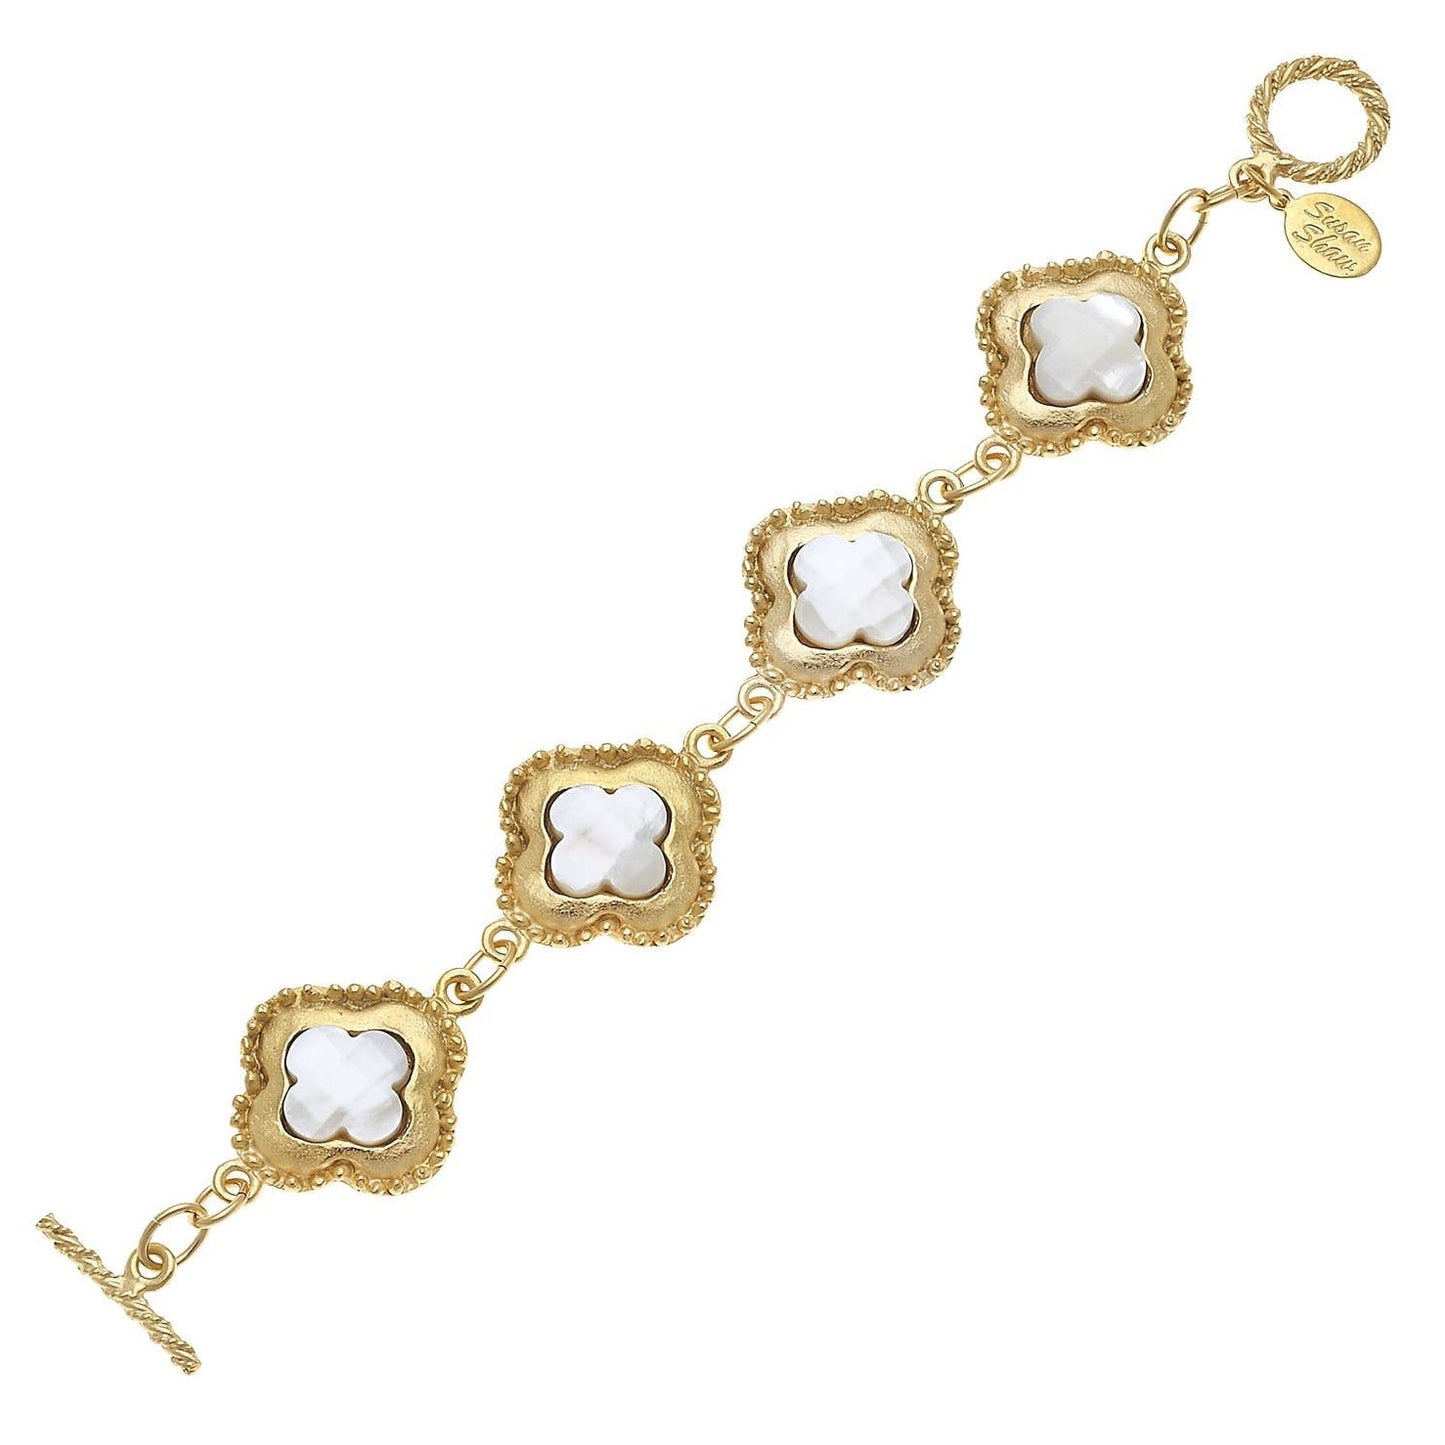 Genuine Mother of Pearl Set in Gold Clover Bracelet